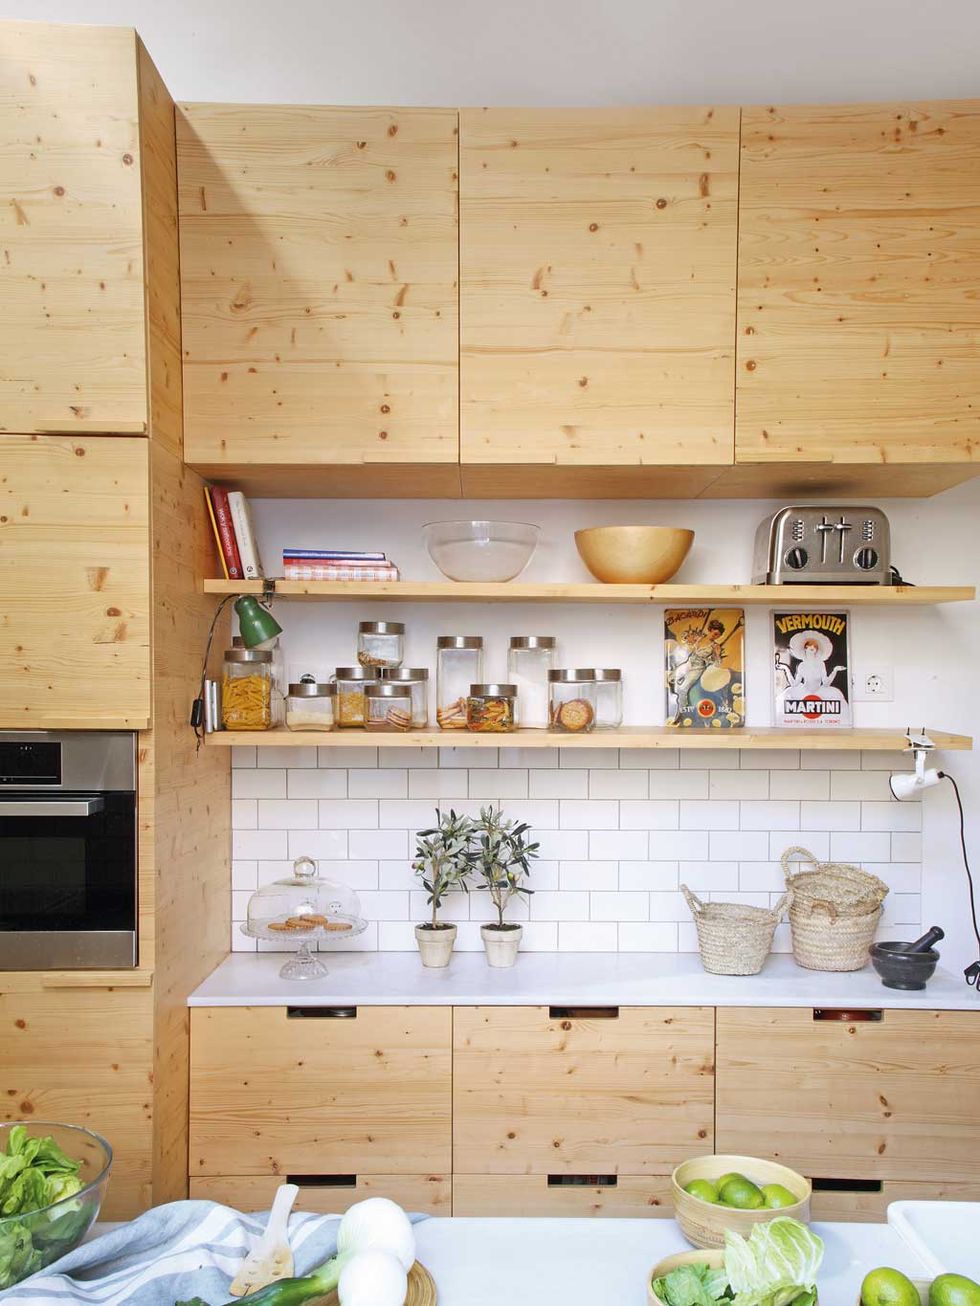 Cómo decorar y aprovechar el espacio en una cocina pequeña cuadrada